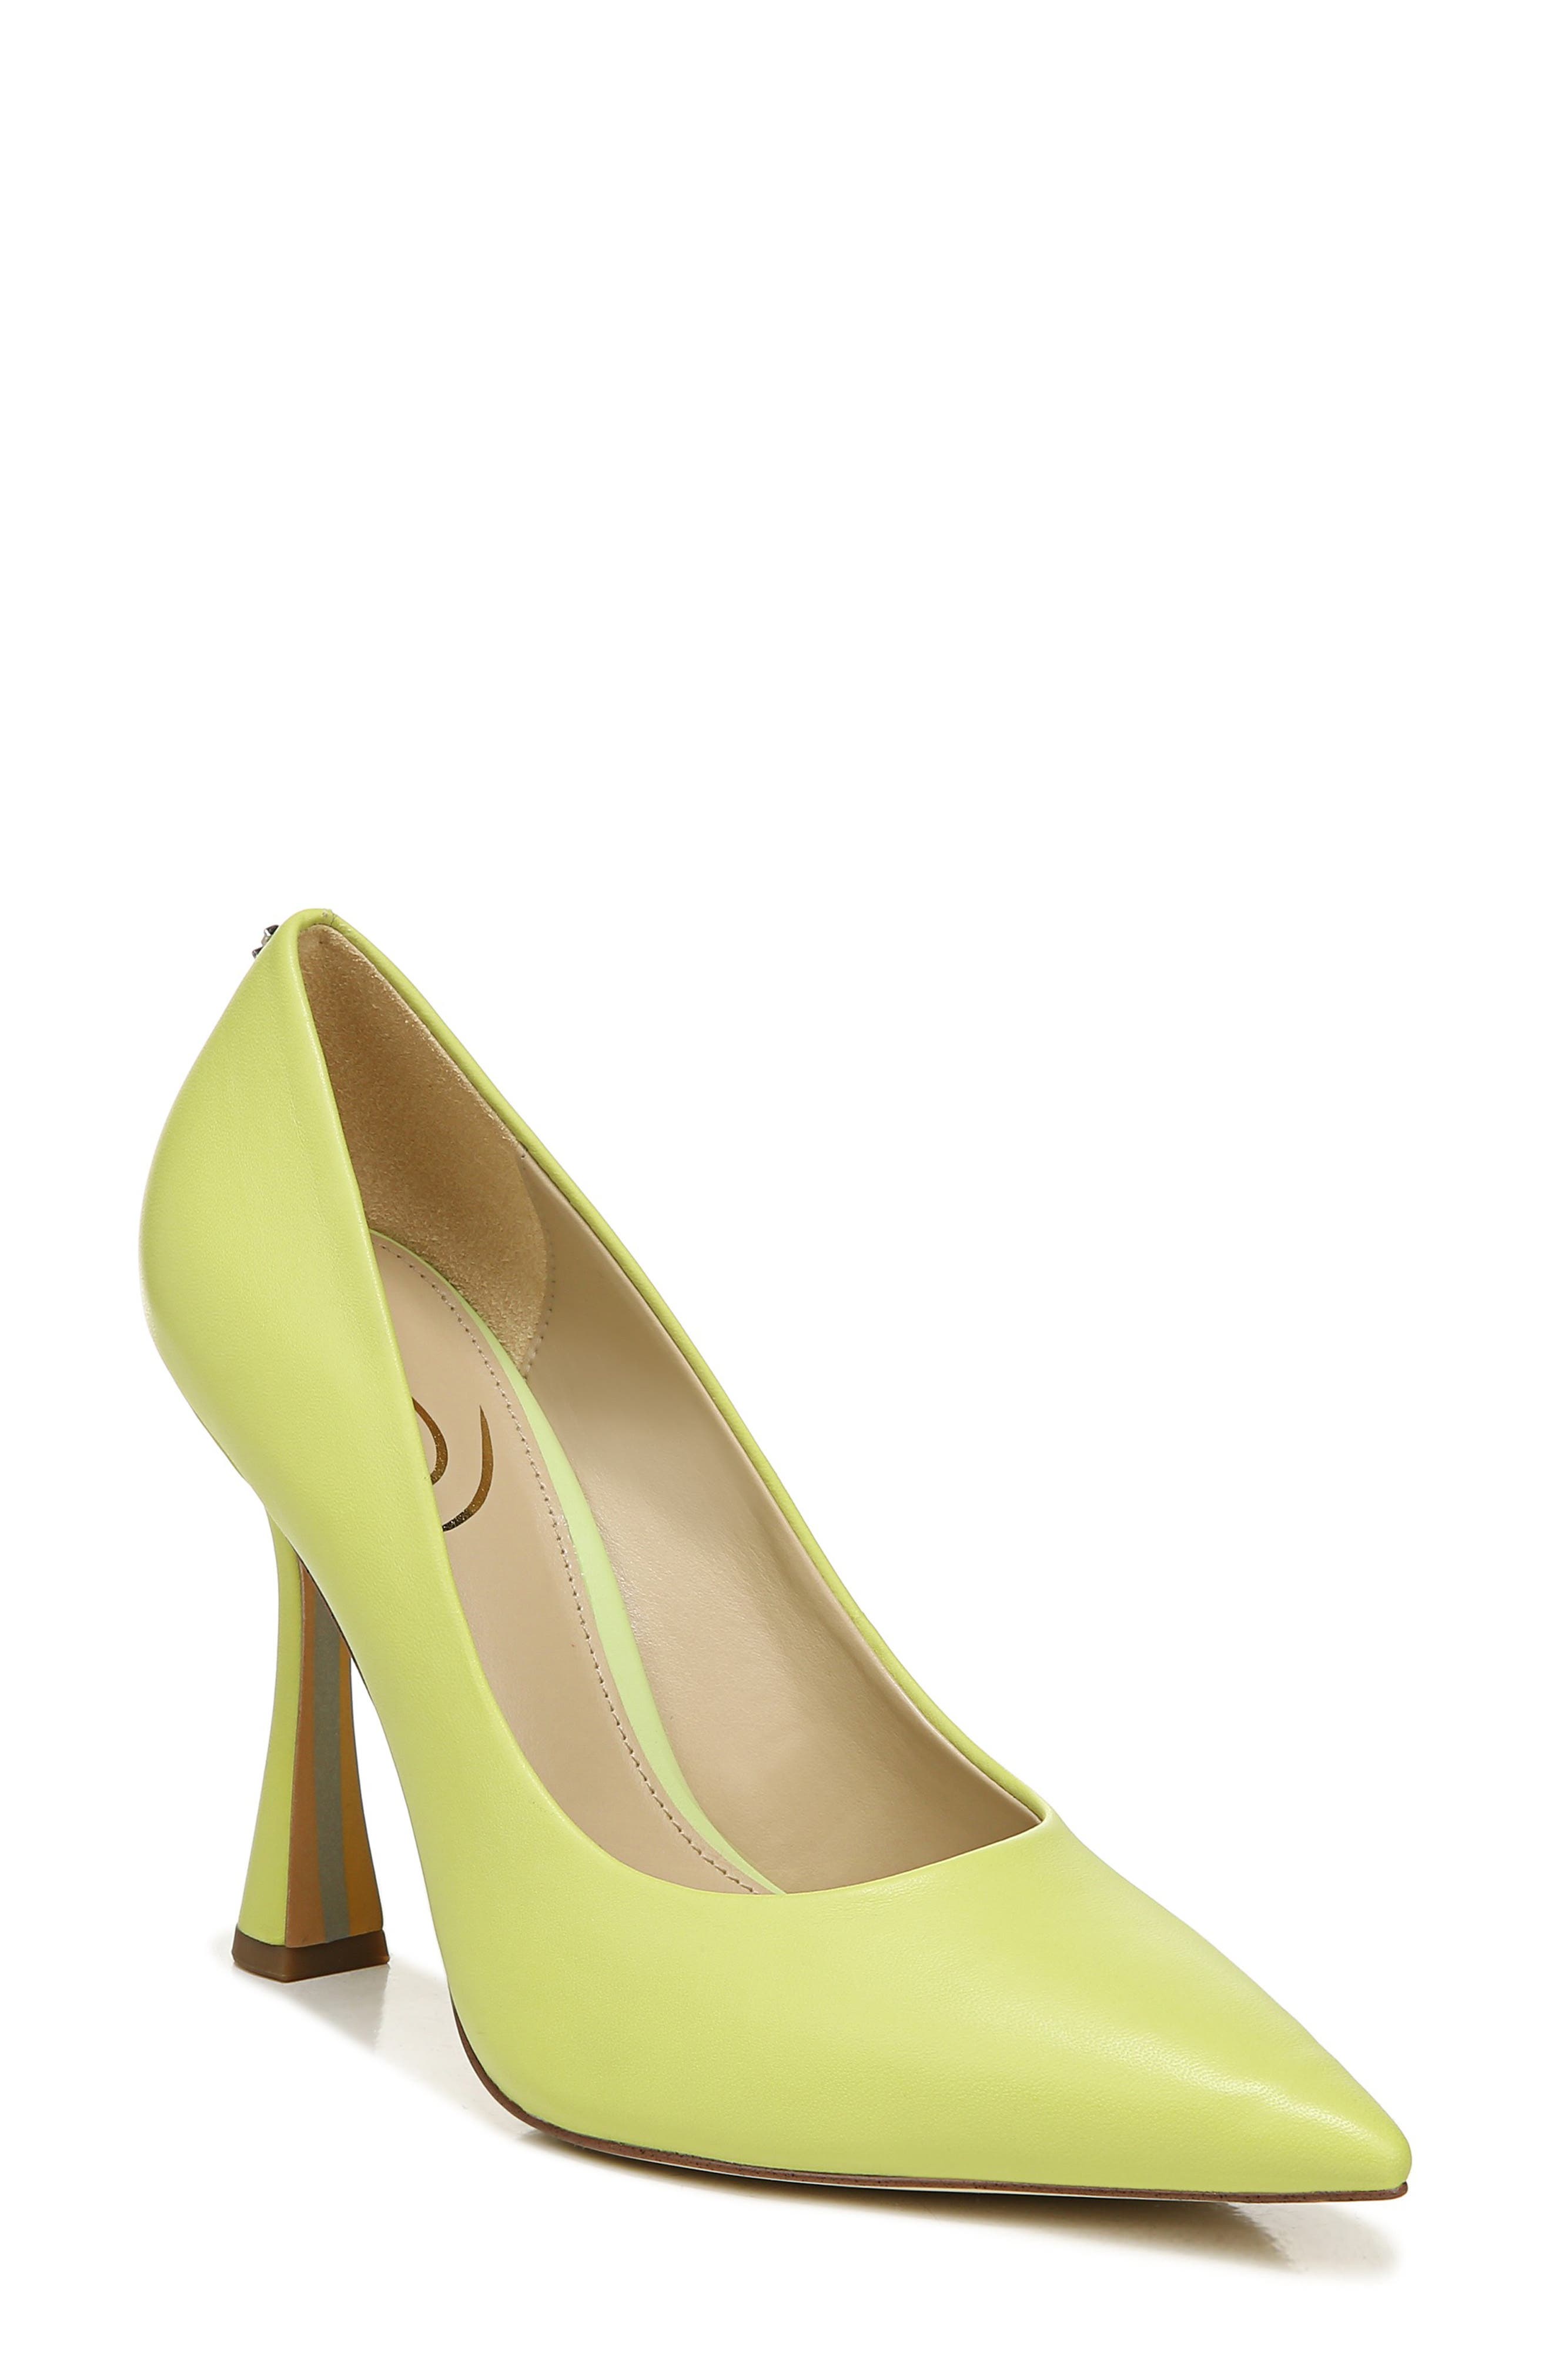 Mixed Color Classic Women High Heels Shoes 7cm Female Simple Women Pumps Heels Dress Shoes Orange,6.5